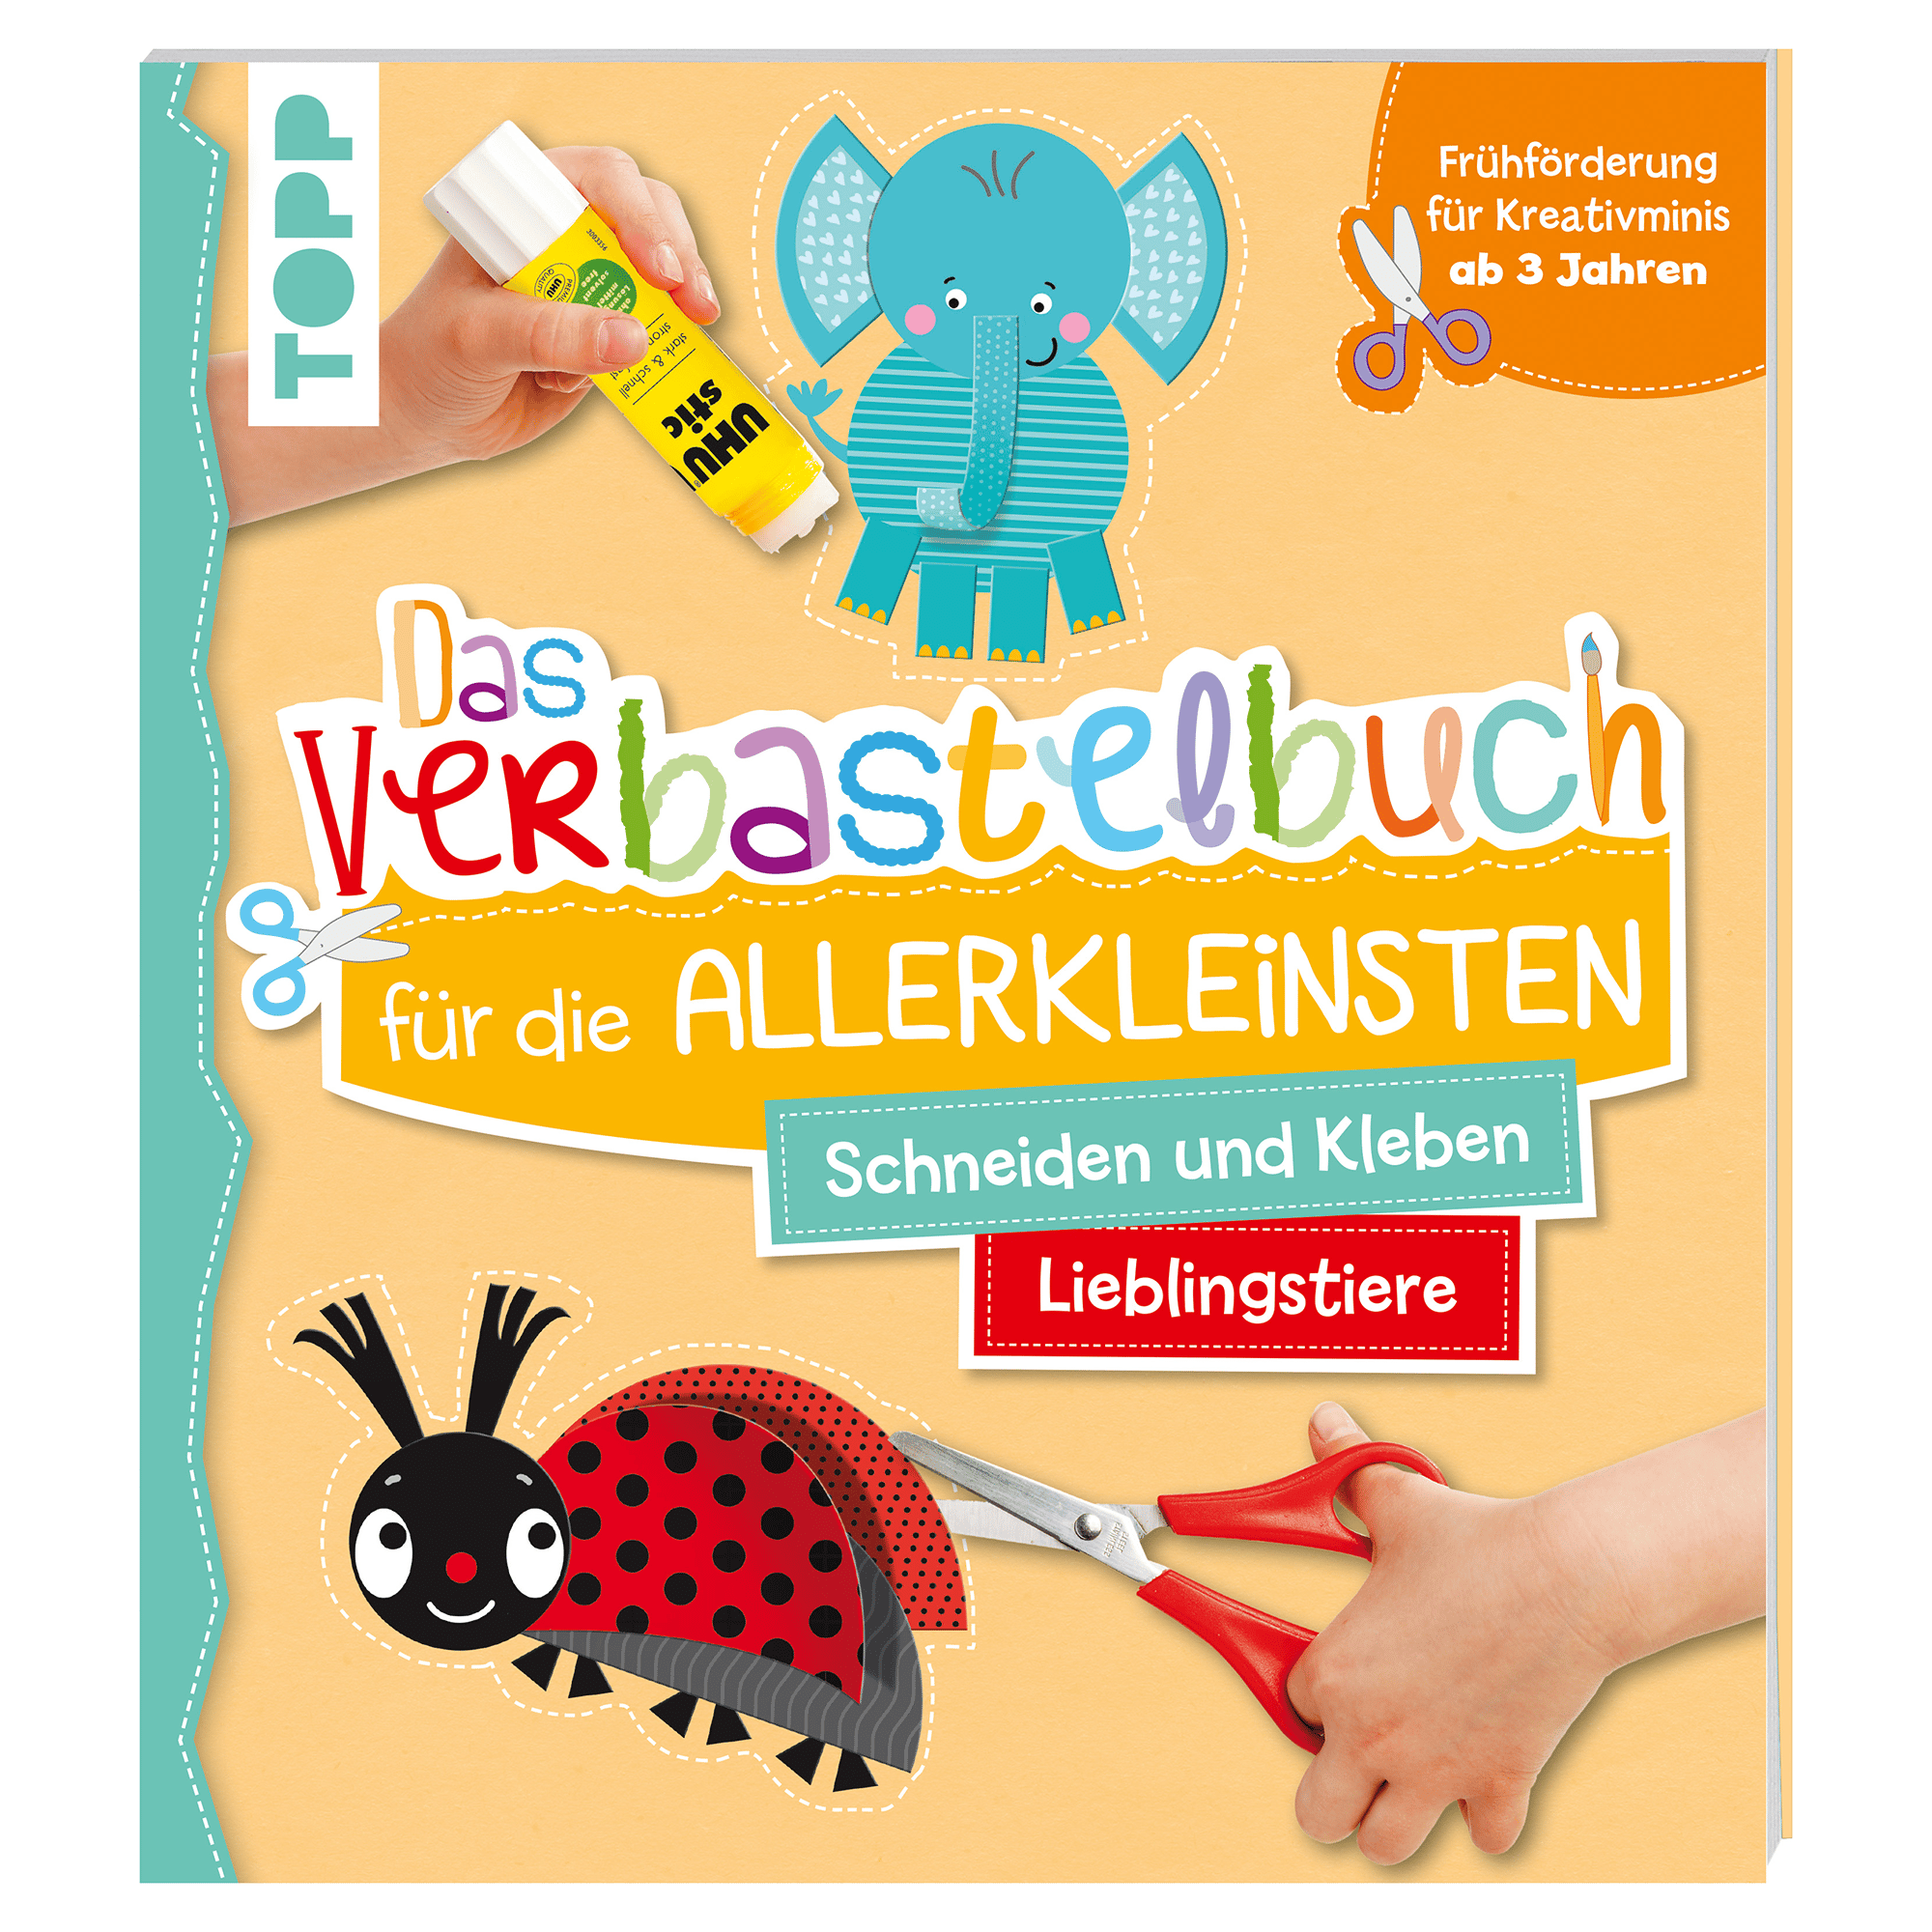 Das Verbastelbuch für die Allerkleinsten - Lieblingstiere frechverlag 2000584478408 1